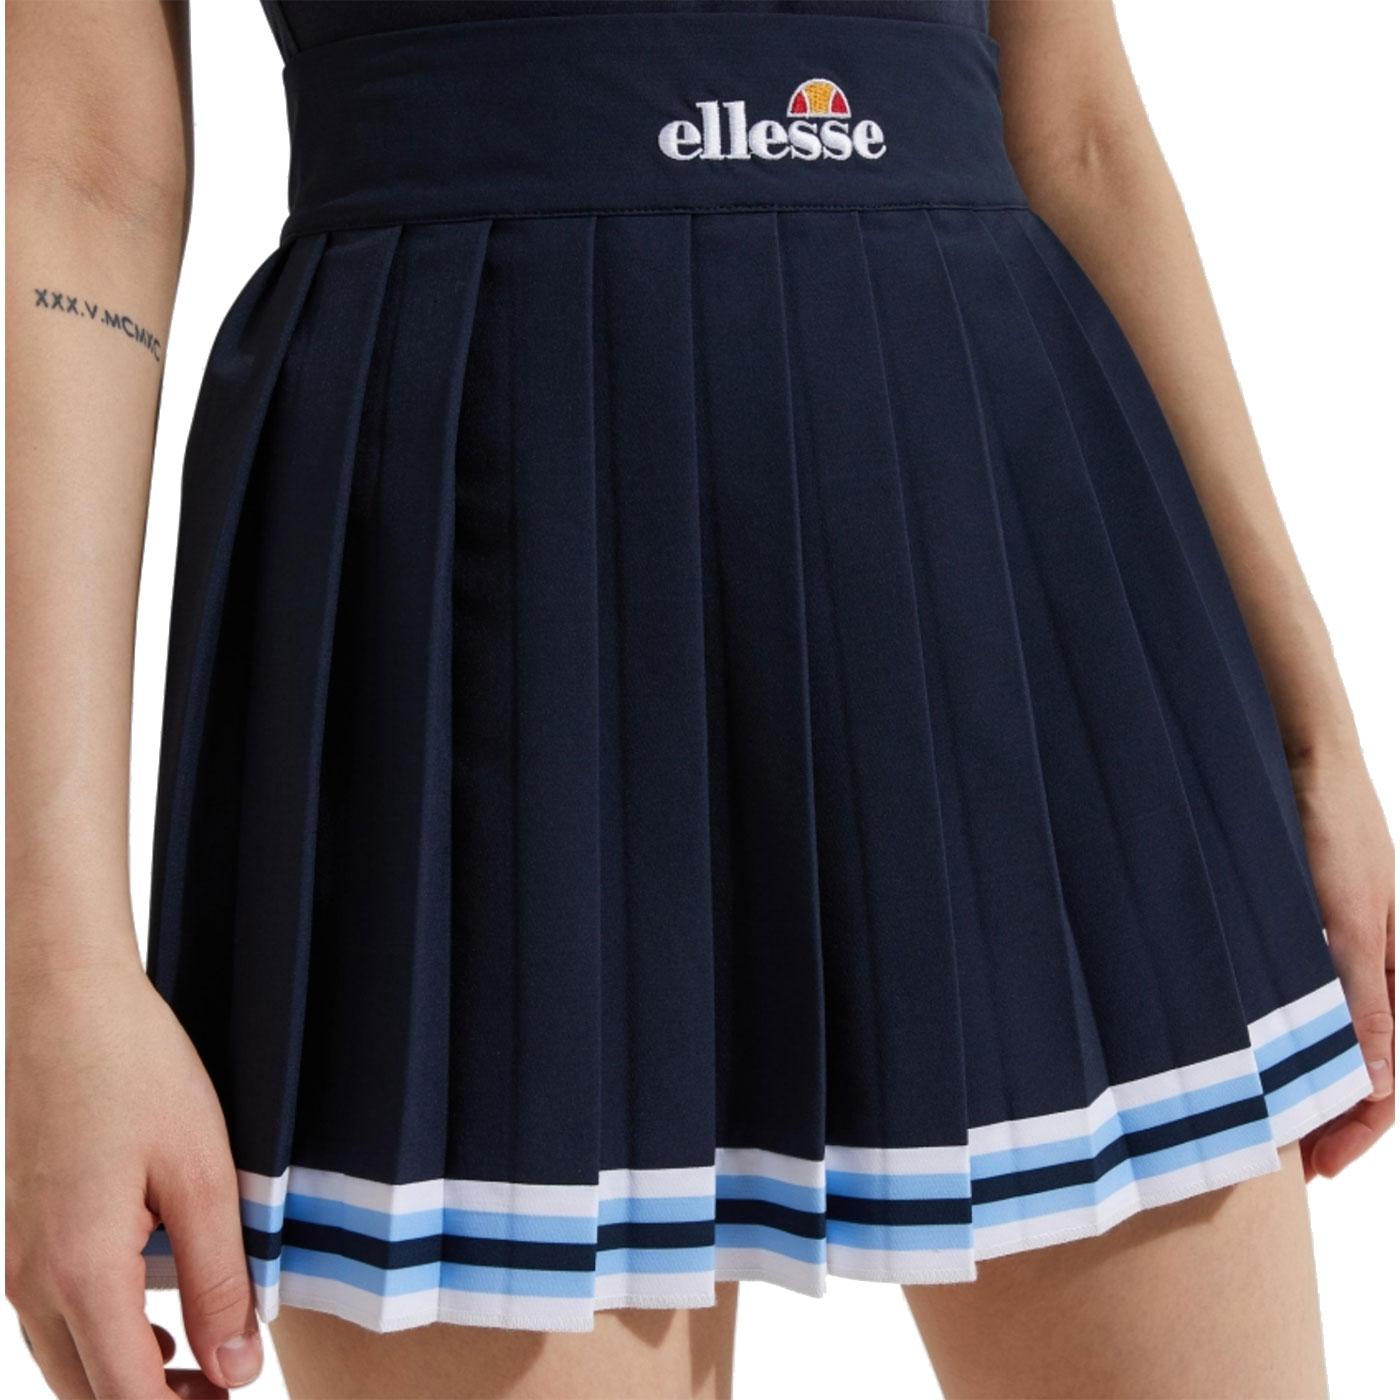 ELLESSE 'Skate' Retro Pleated Tennis Mini Skirt in Navy